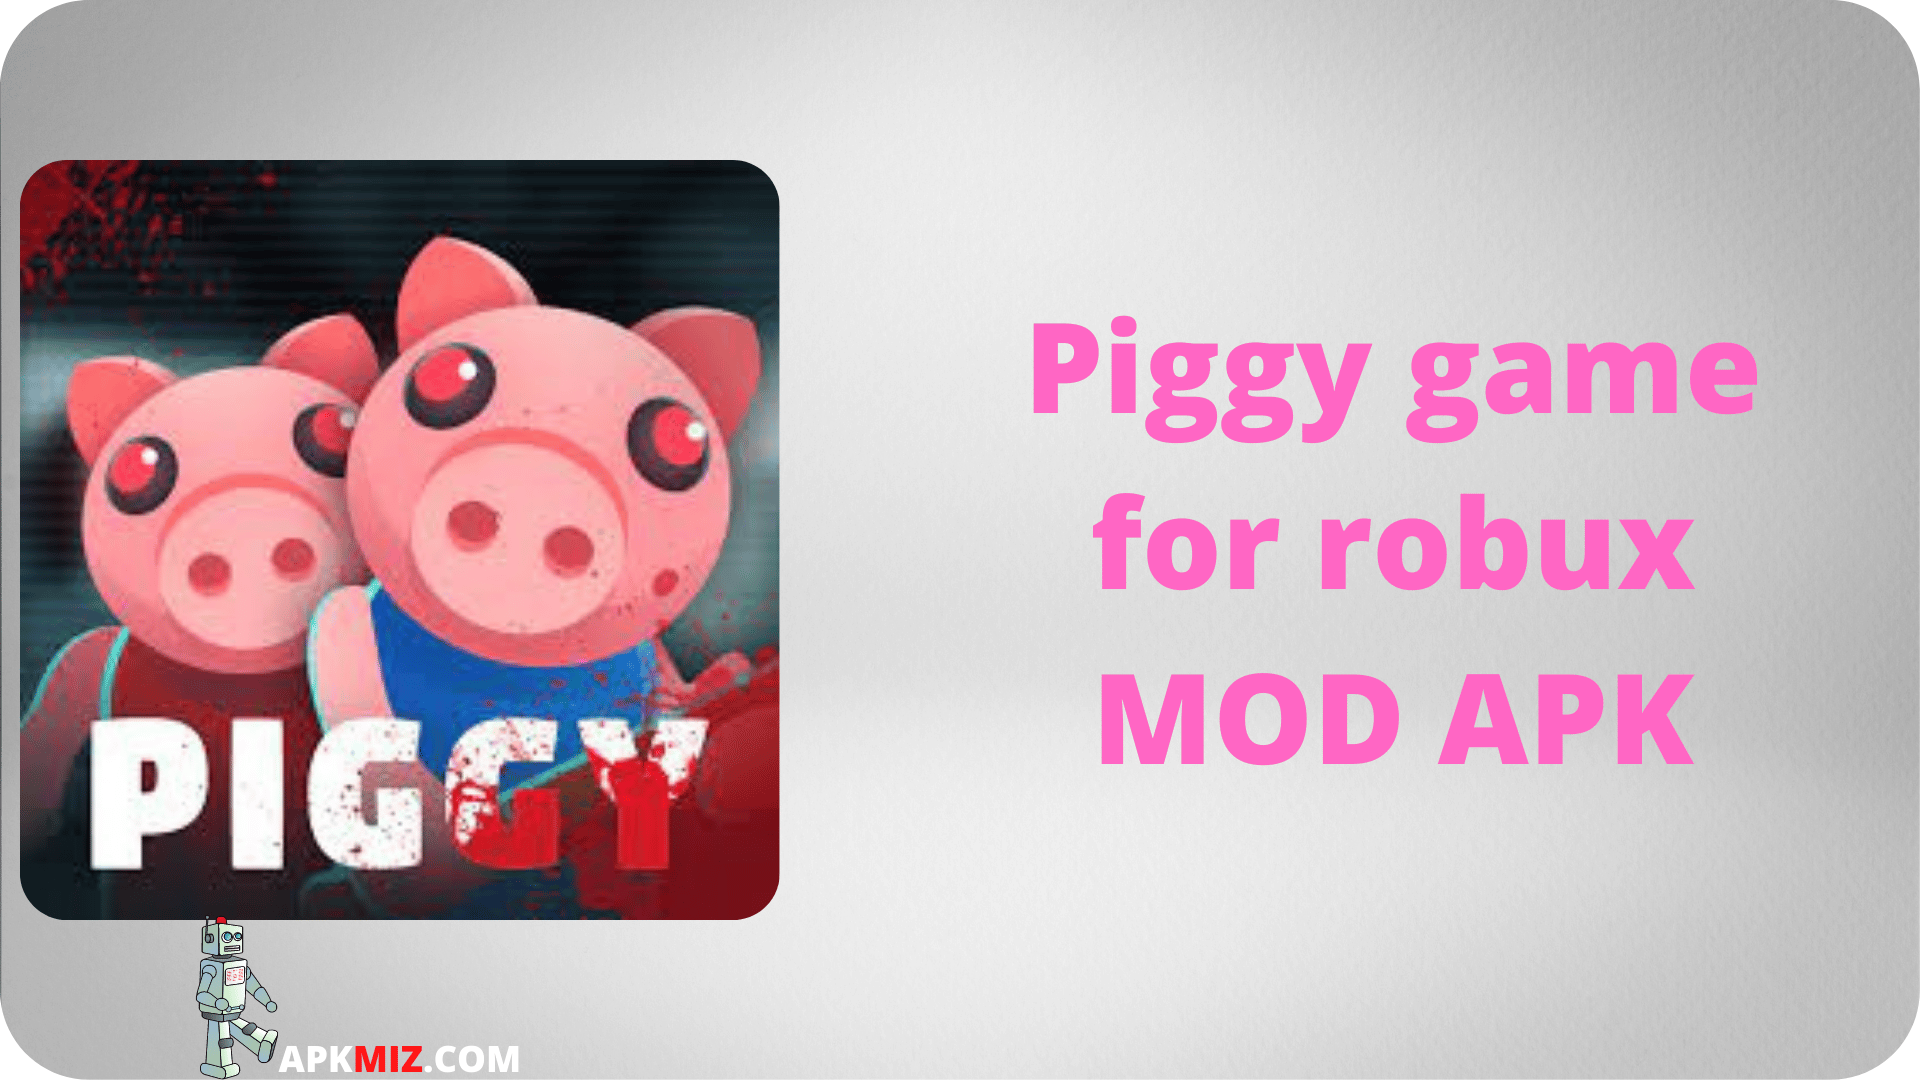 Piggy game for robux MOD APK